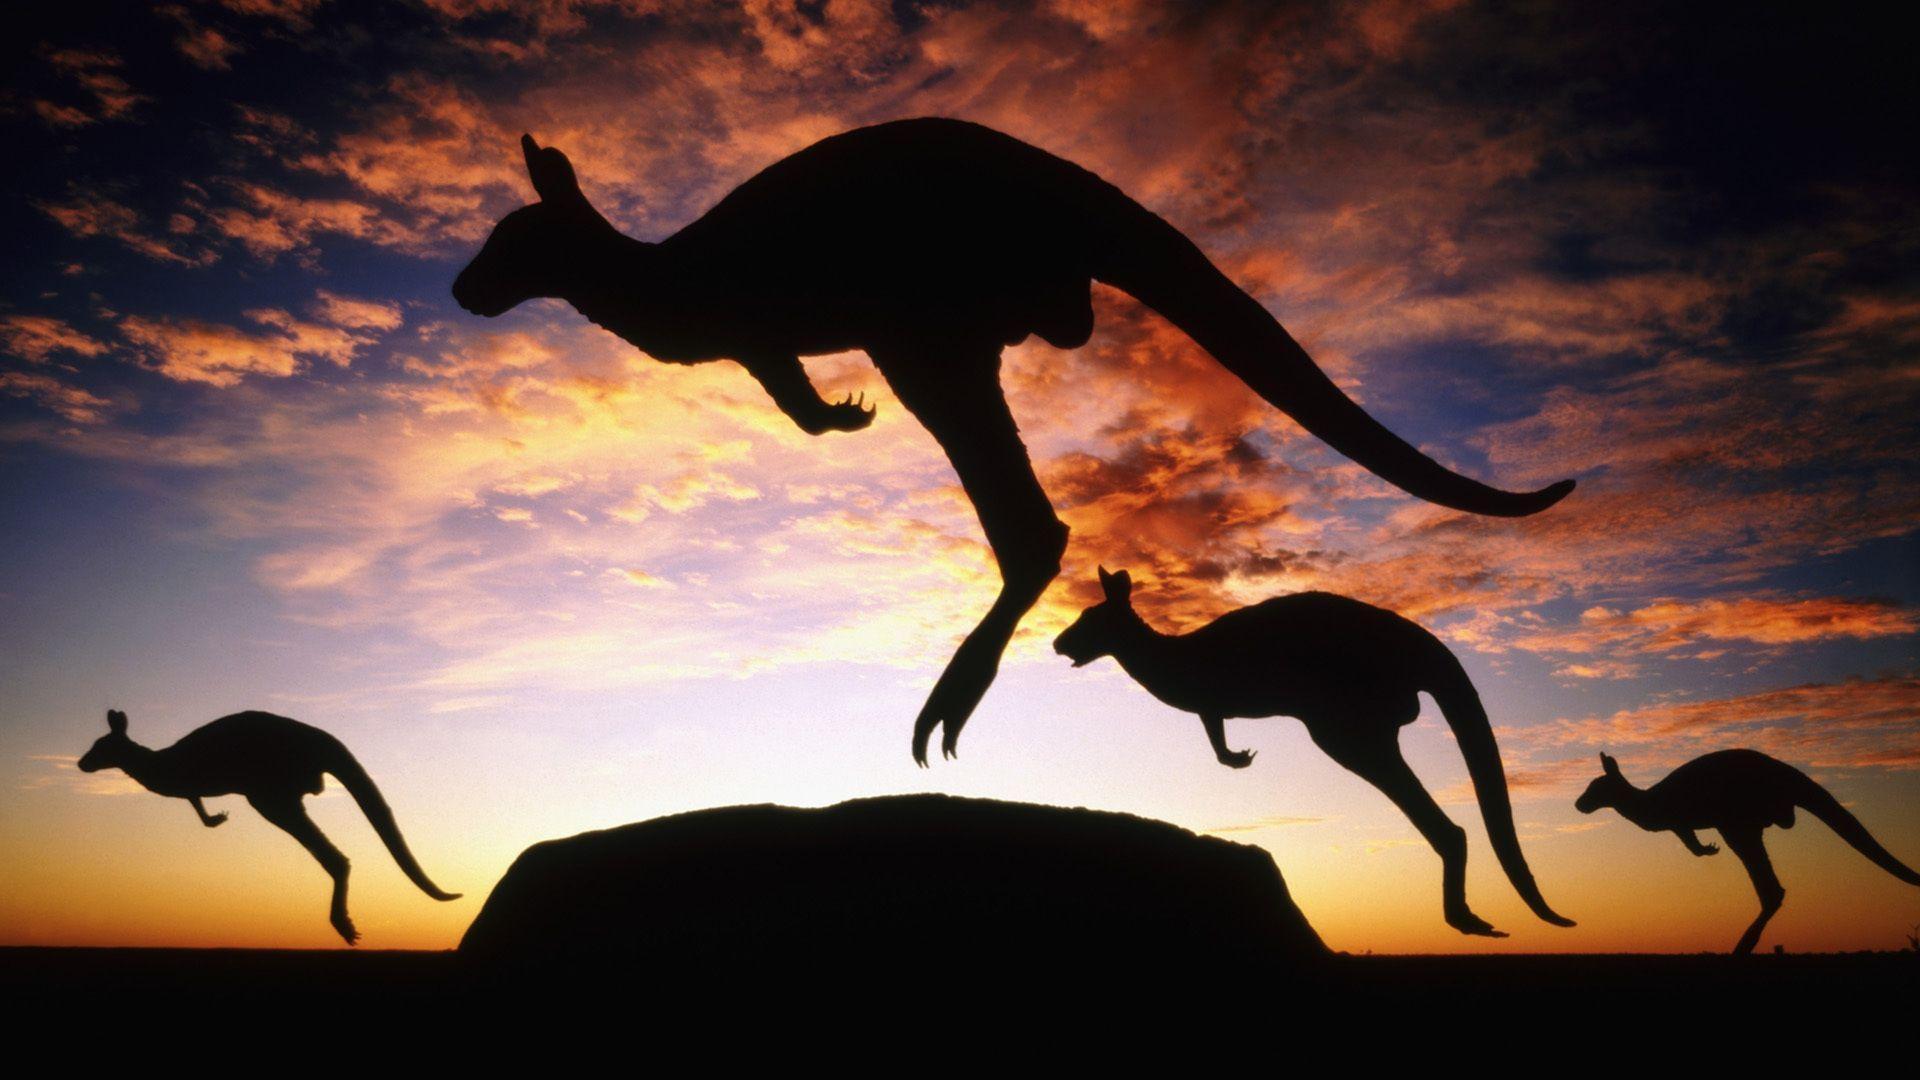 kangaroo HD Wallpaper Free Download. HD Free Wallpaper Download